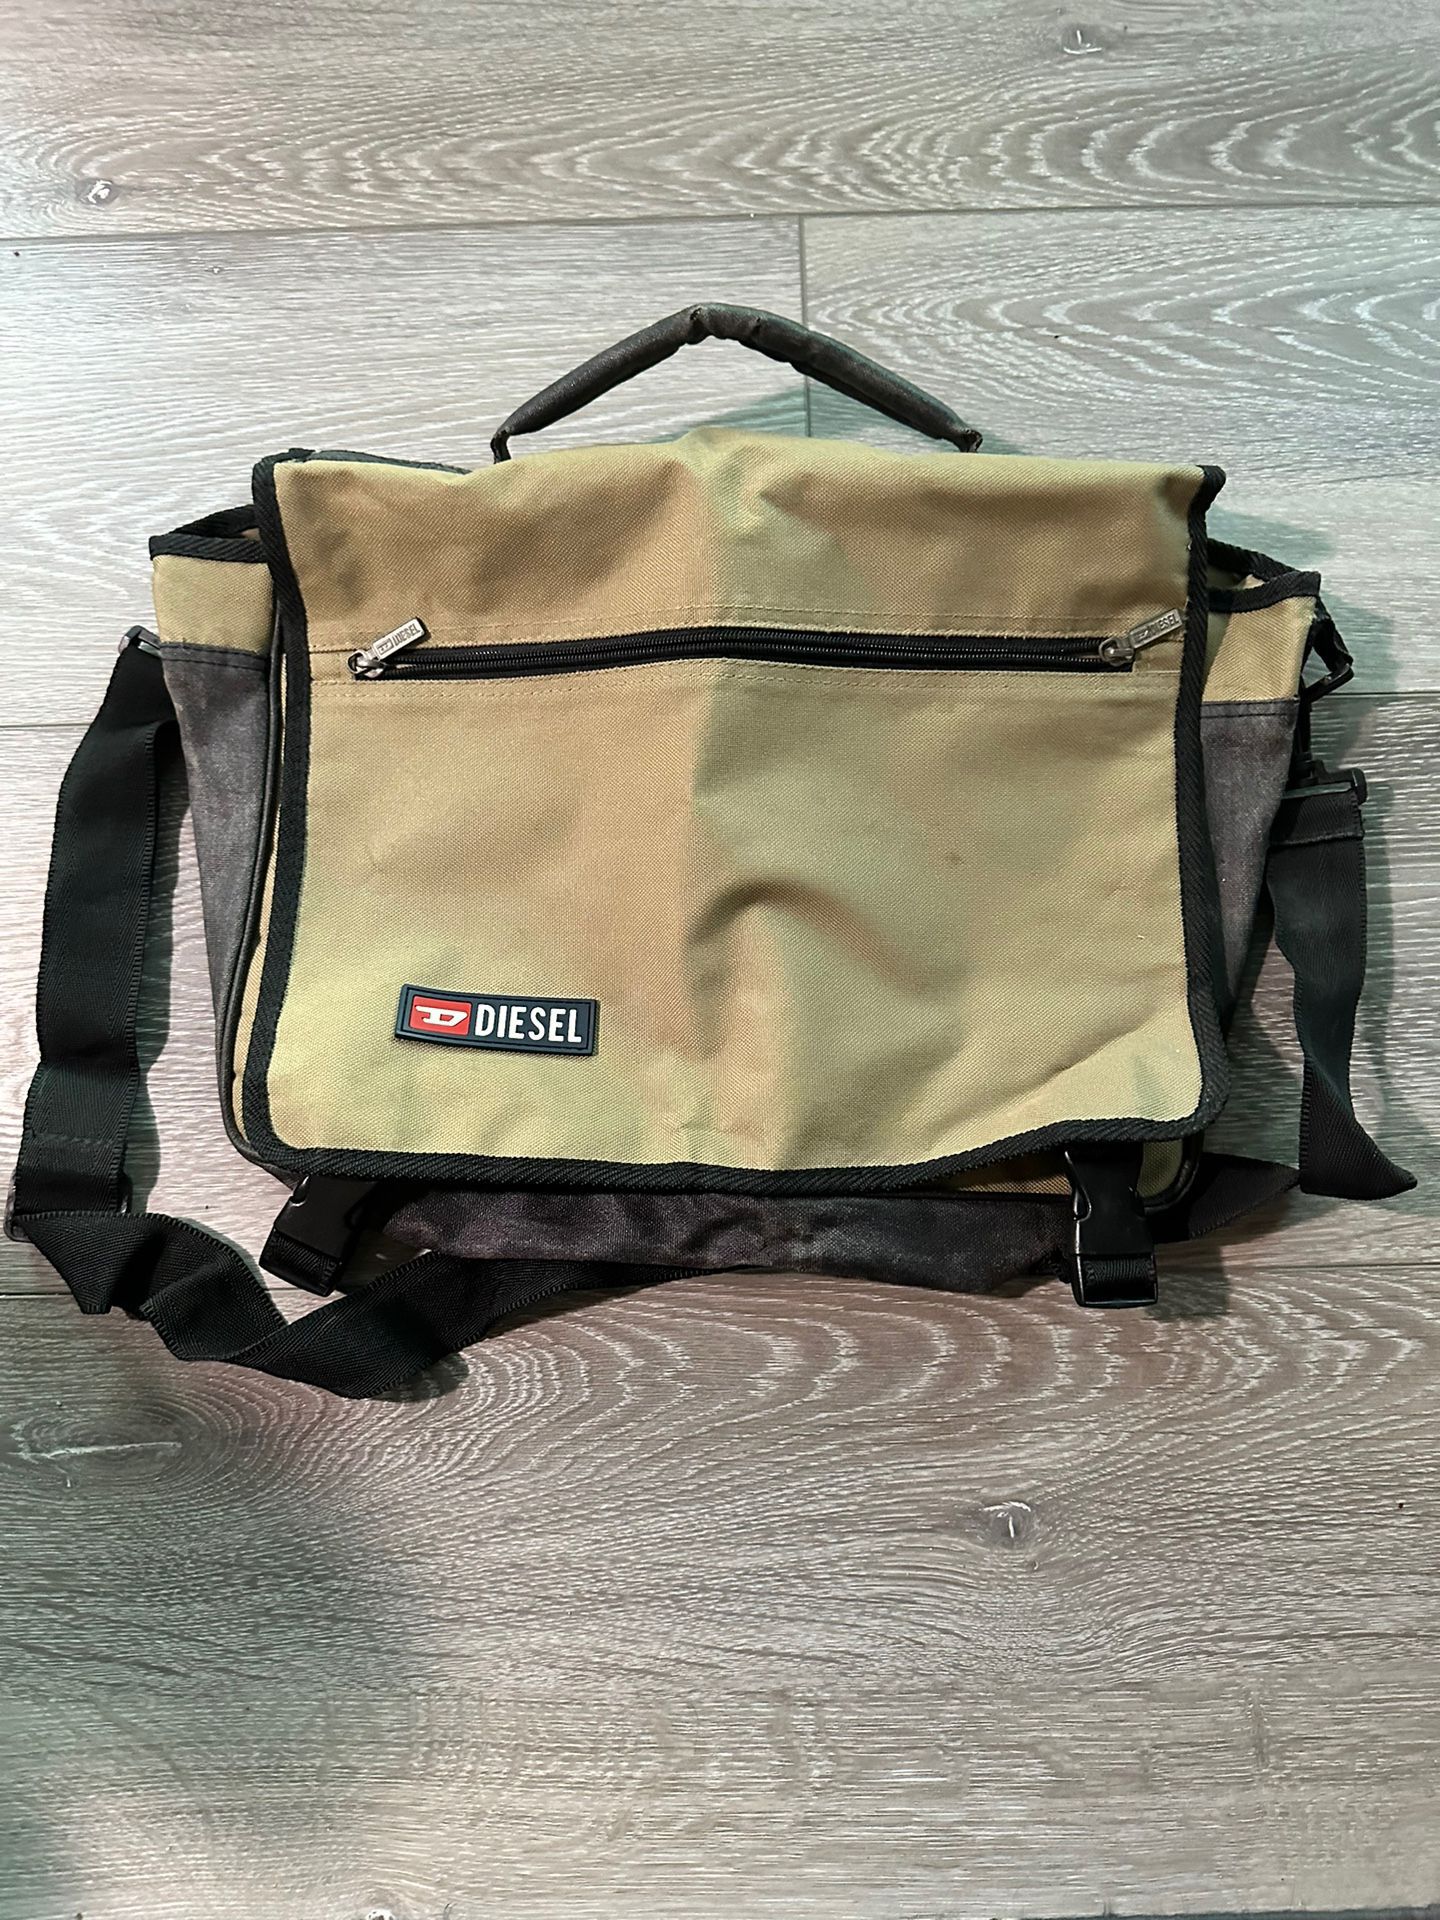 Vintage Diesel Messenger Bag (Tan)